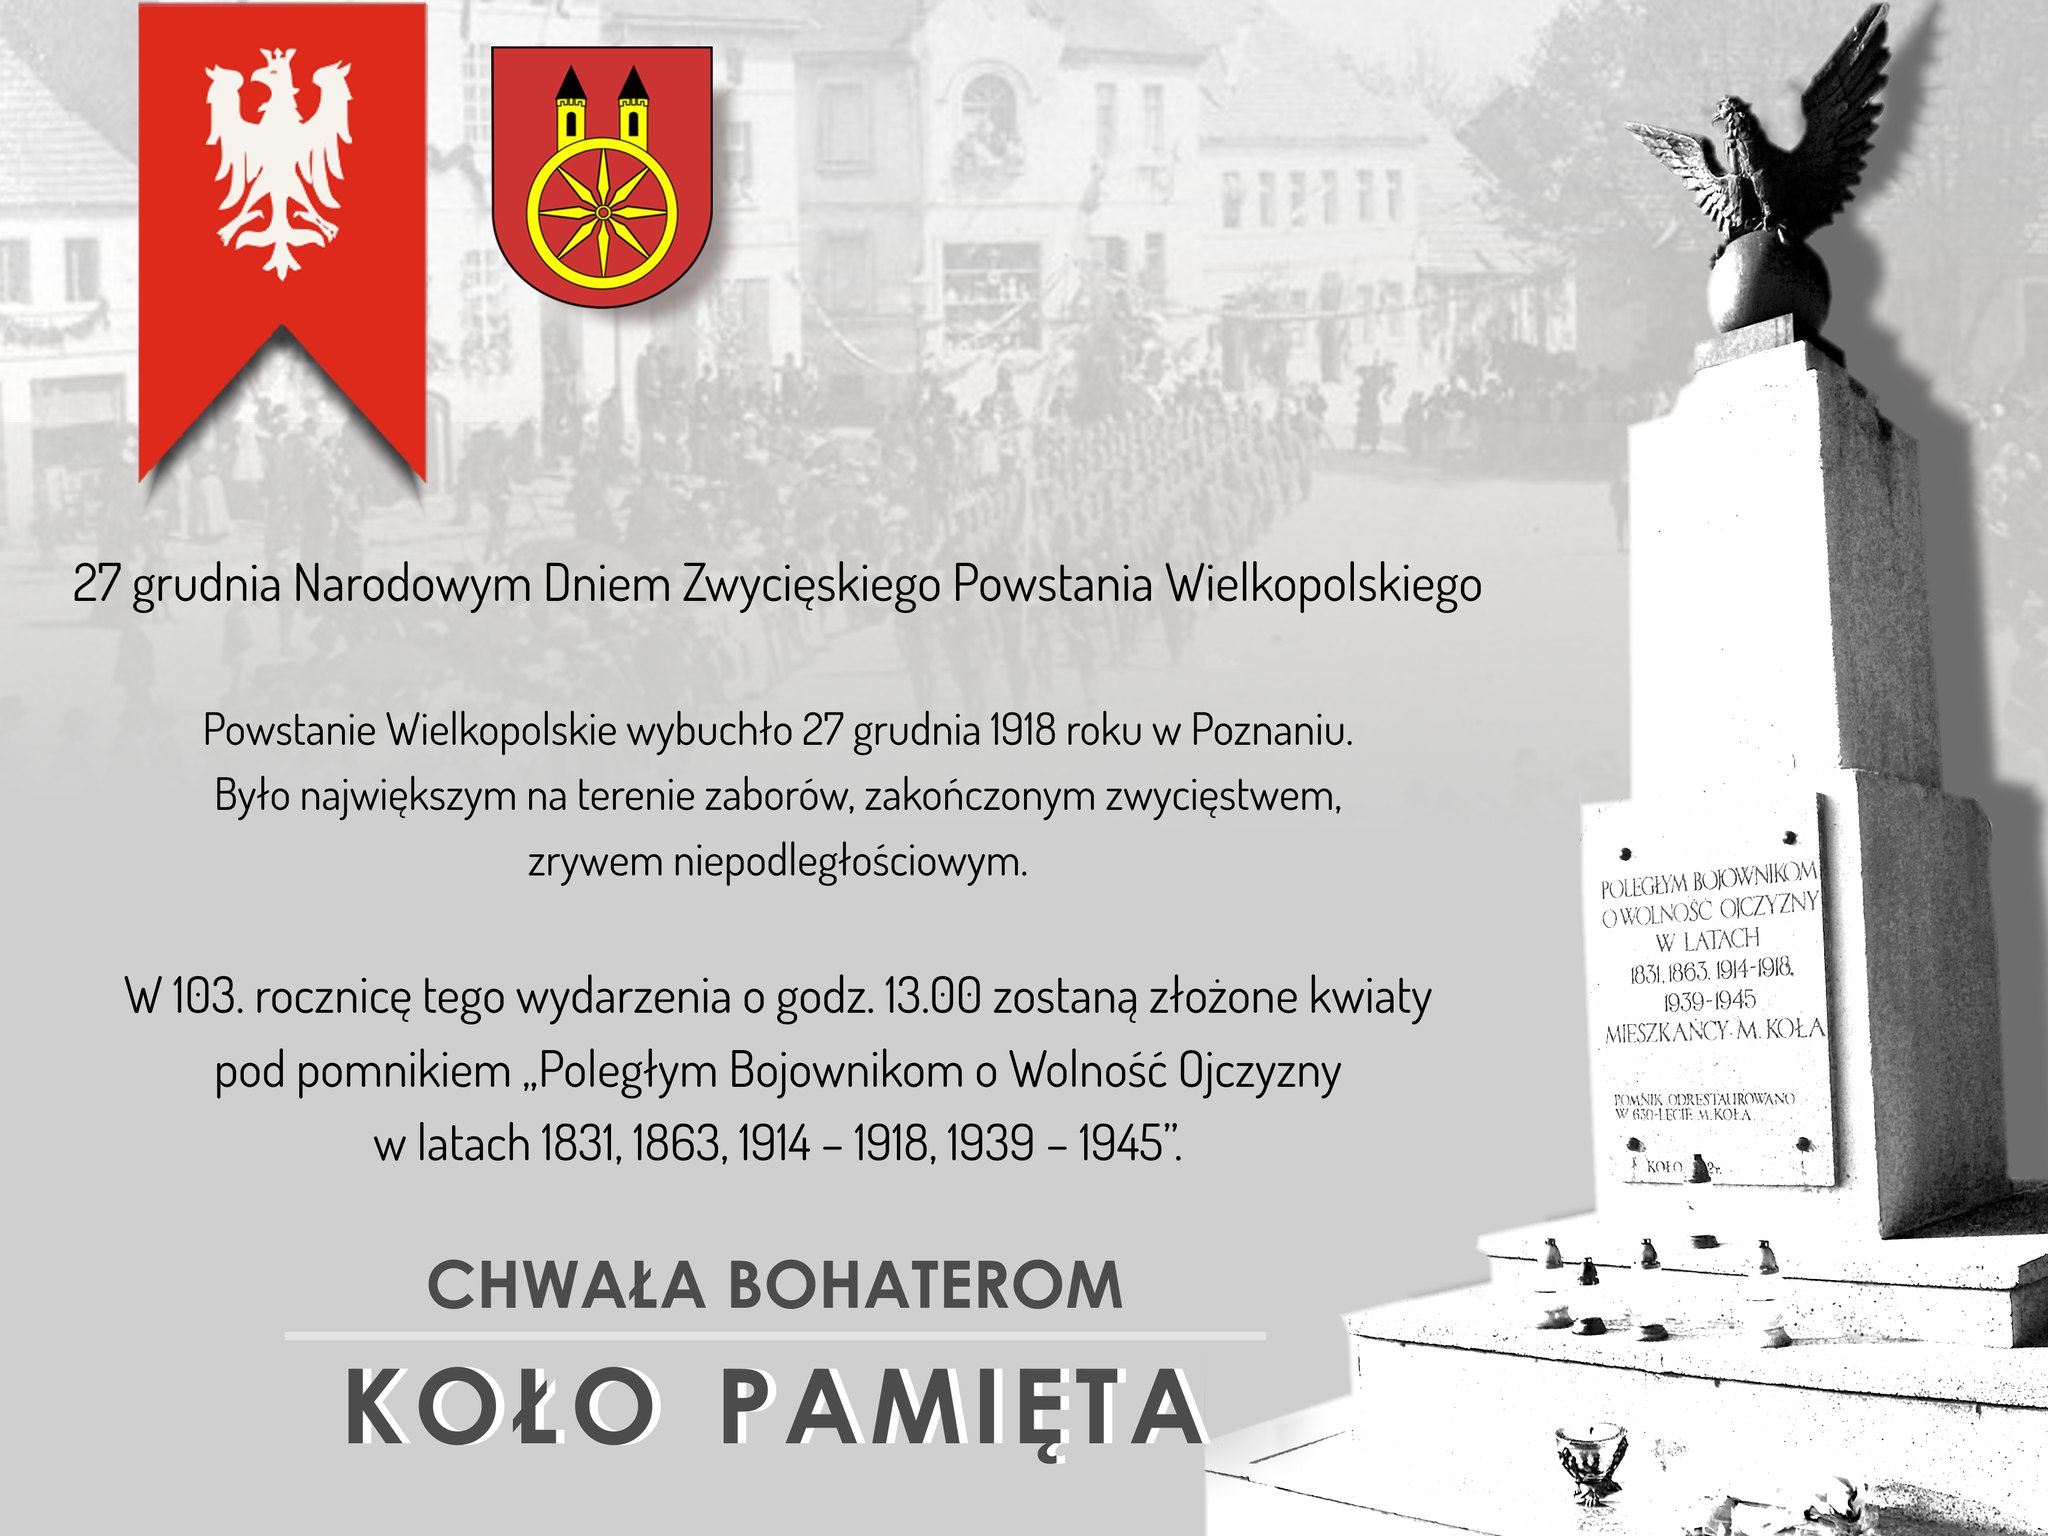 Plansza 27 GRUDNIA Narodowym Dniem Zwycięskiego Powstania Wielkopolskiego, tekst pod planszą